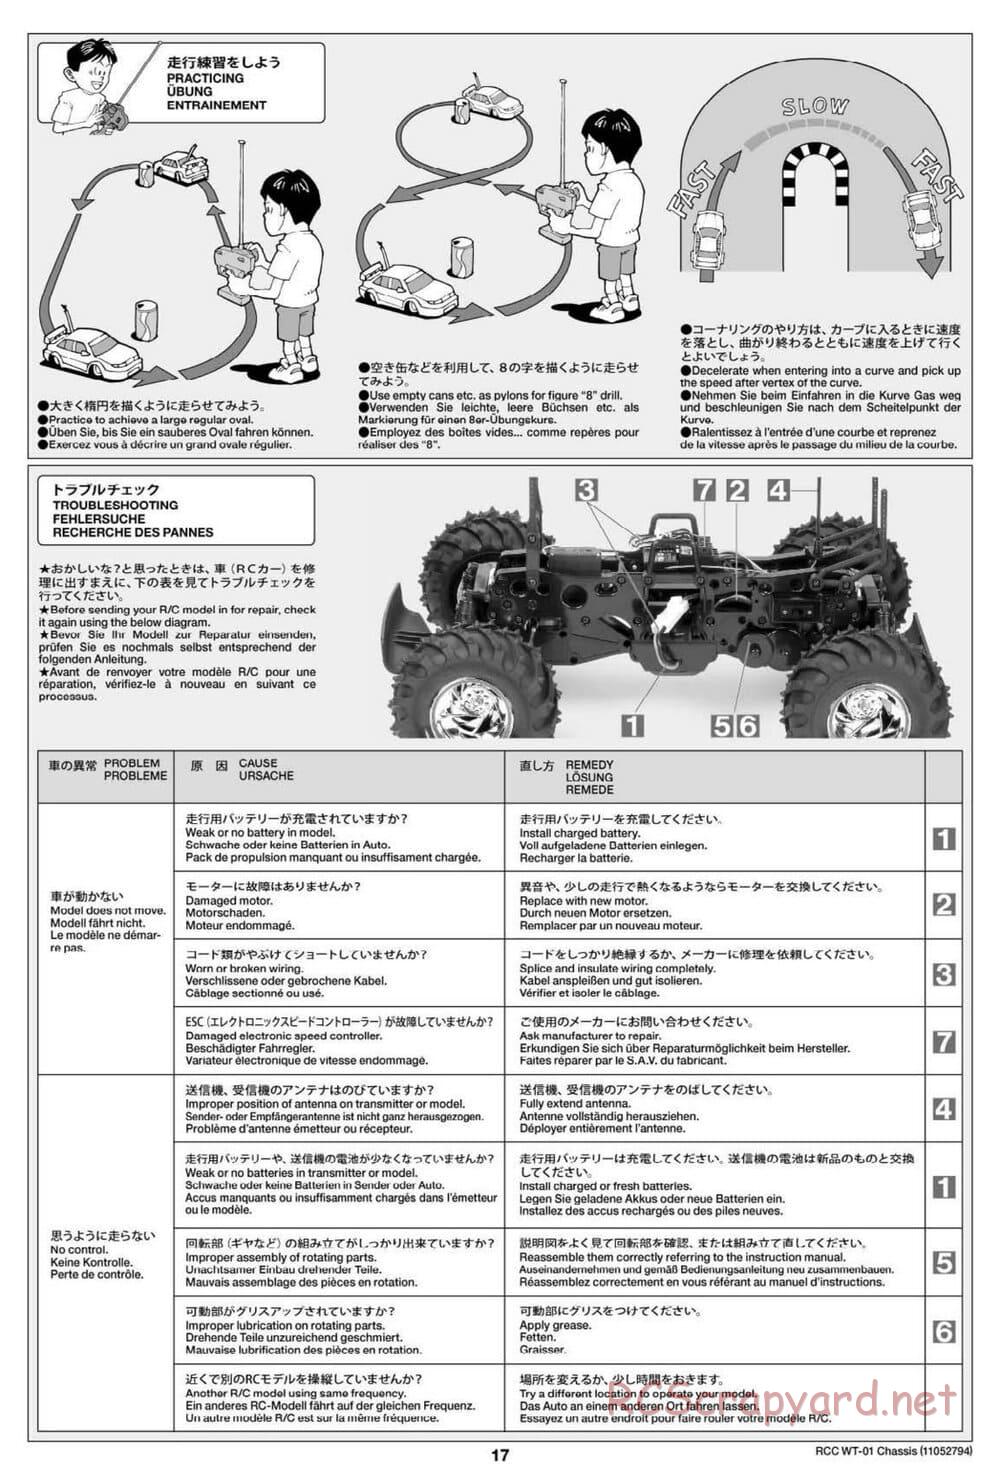 Tamiya - WT-01 Chassis - Manual - Page 17